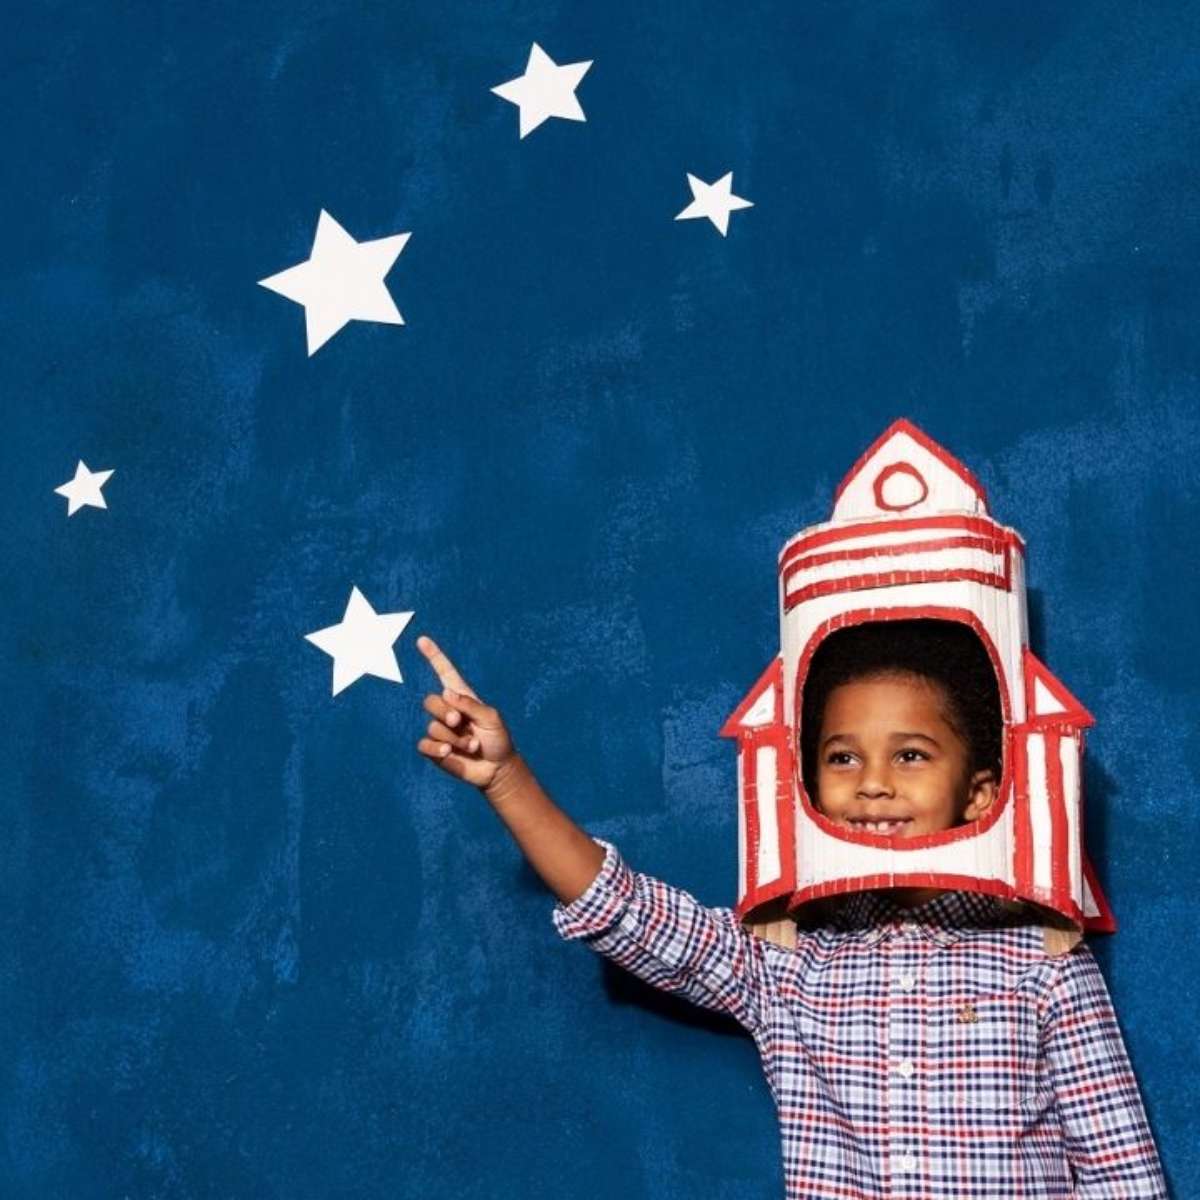 Dia das crianças: 20 brinquedos para cada fase do seu filho - Revista  Crescer, Educação